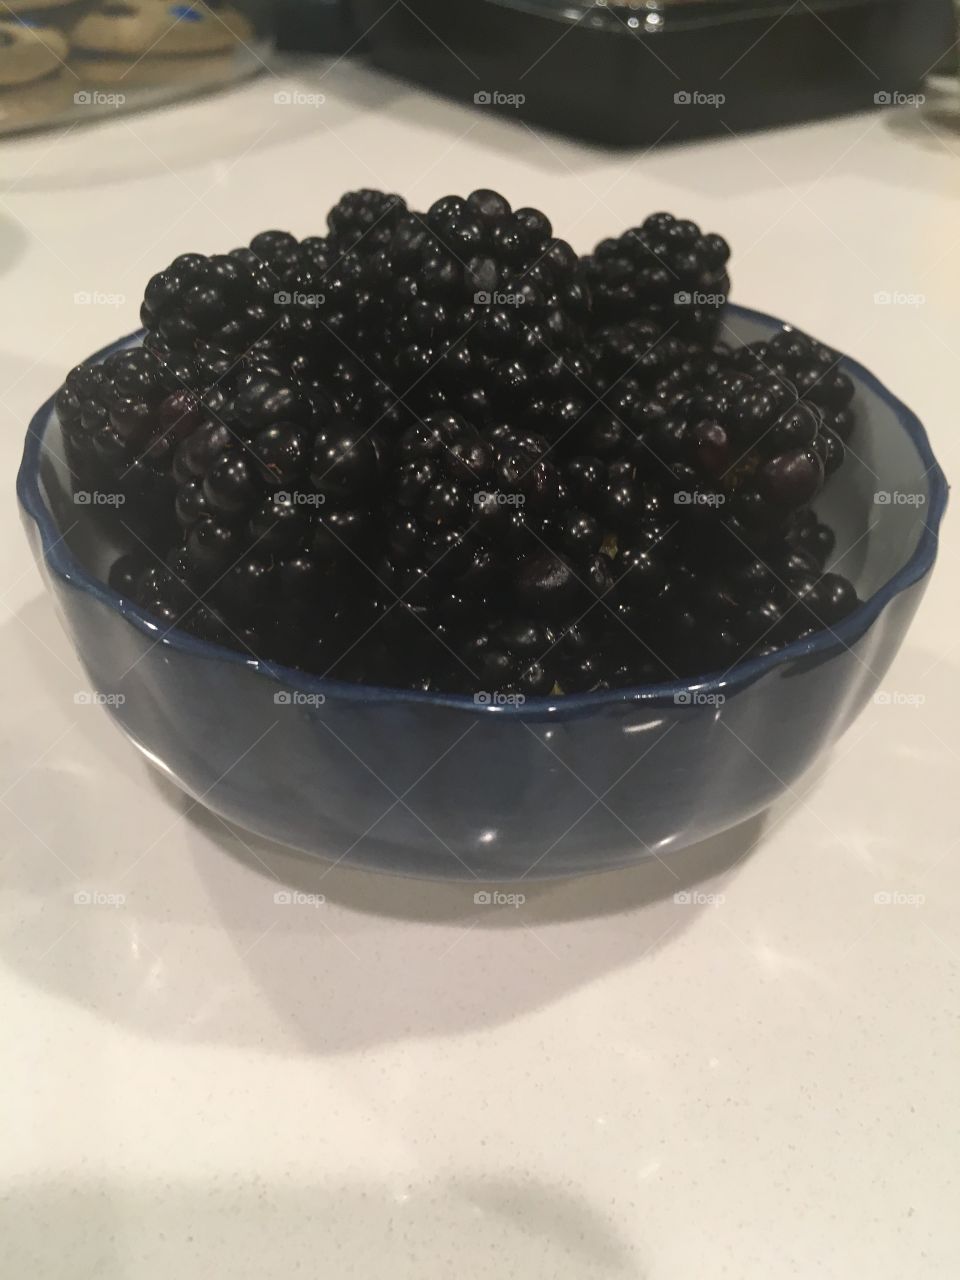 Blackberries in a bowl 